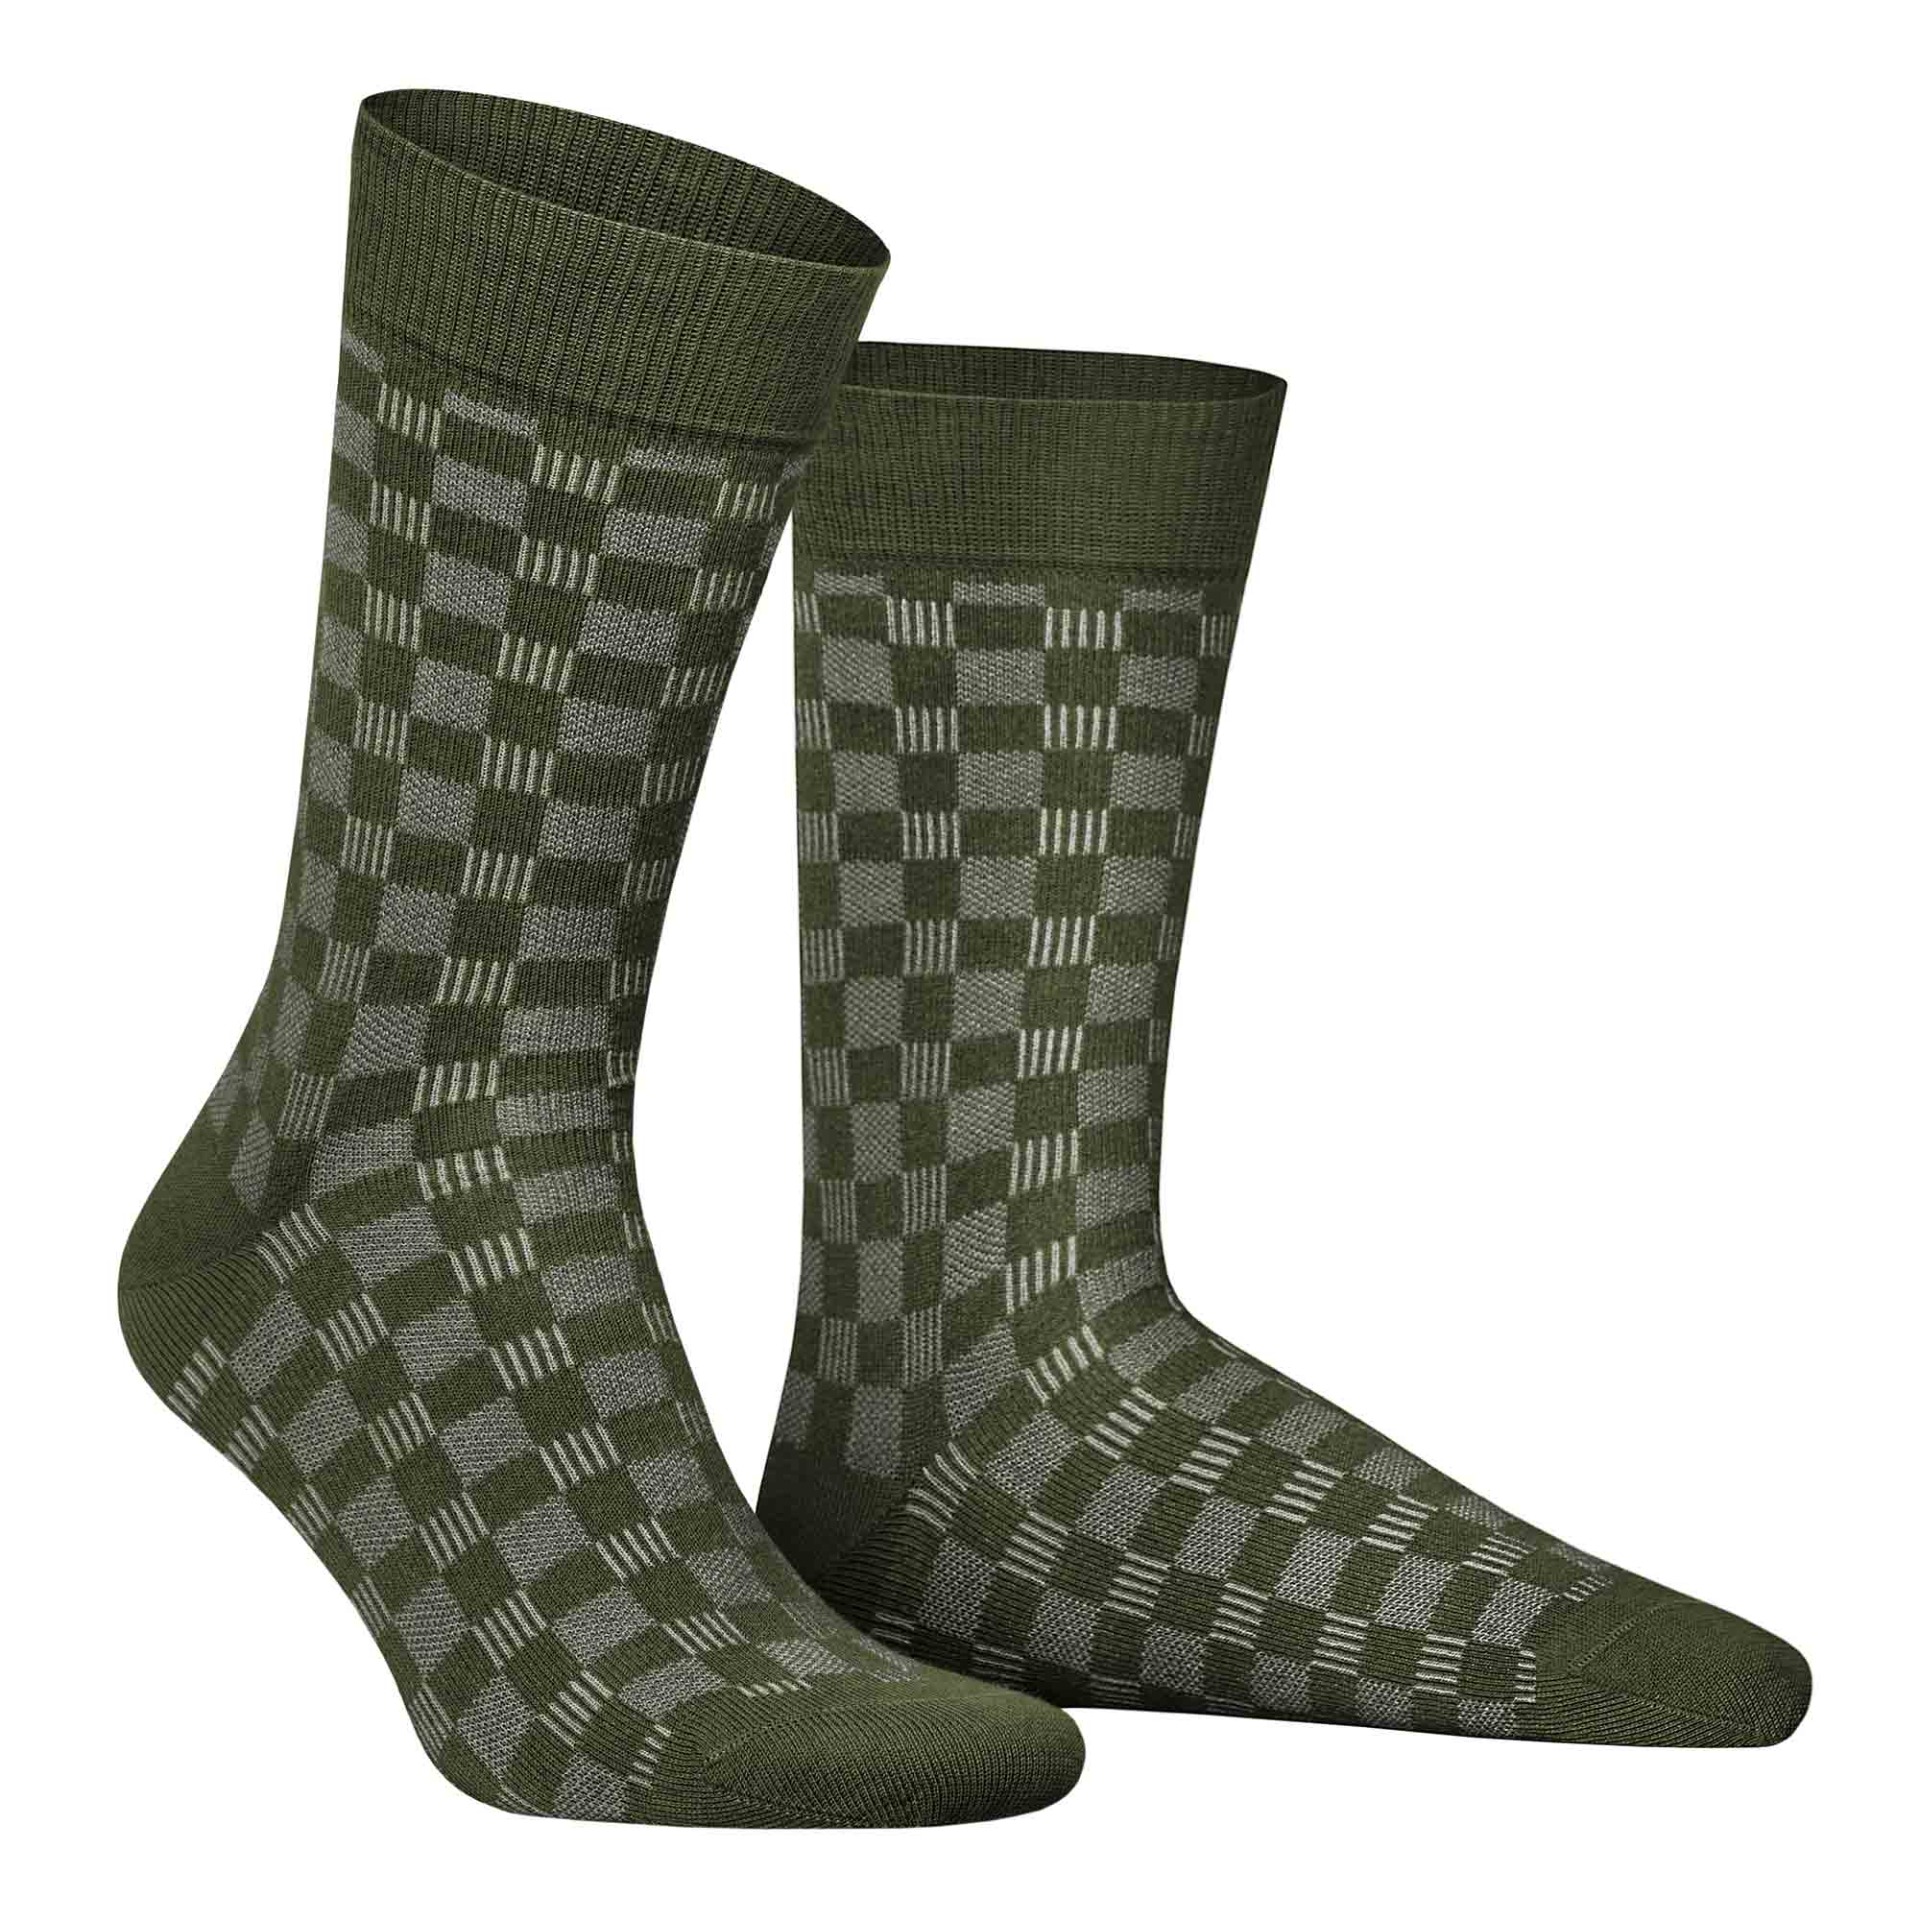 HUDSON Herren BOARD -  43/46 - Socken mit Schachbrett-Muster - Army green 0112 (Grün)